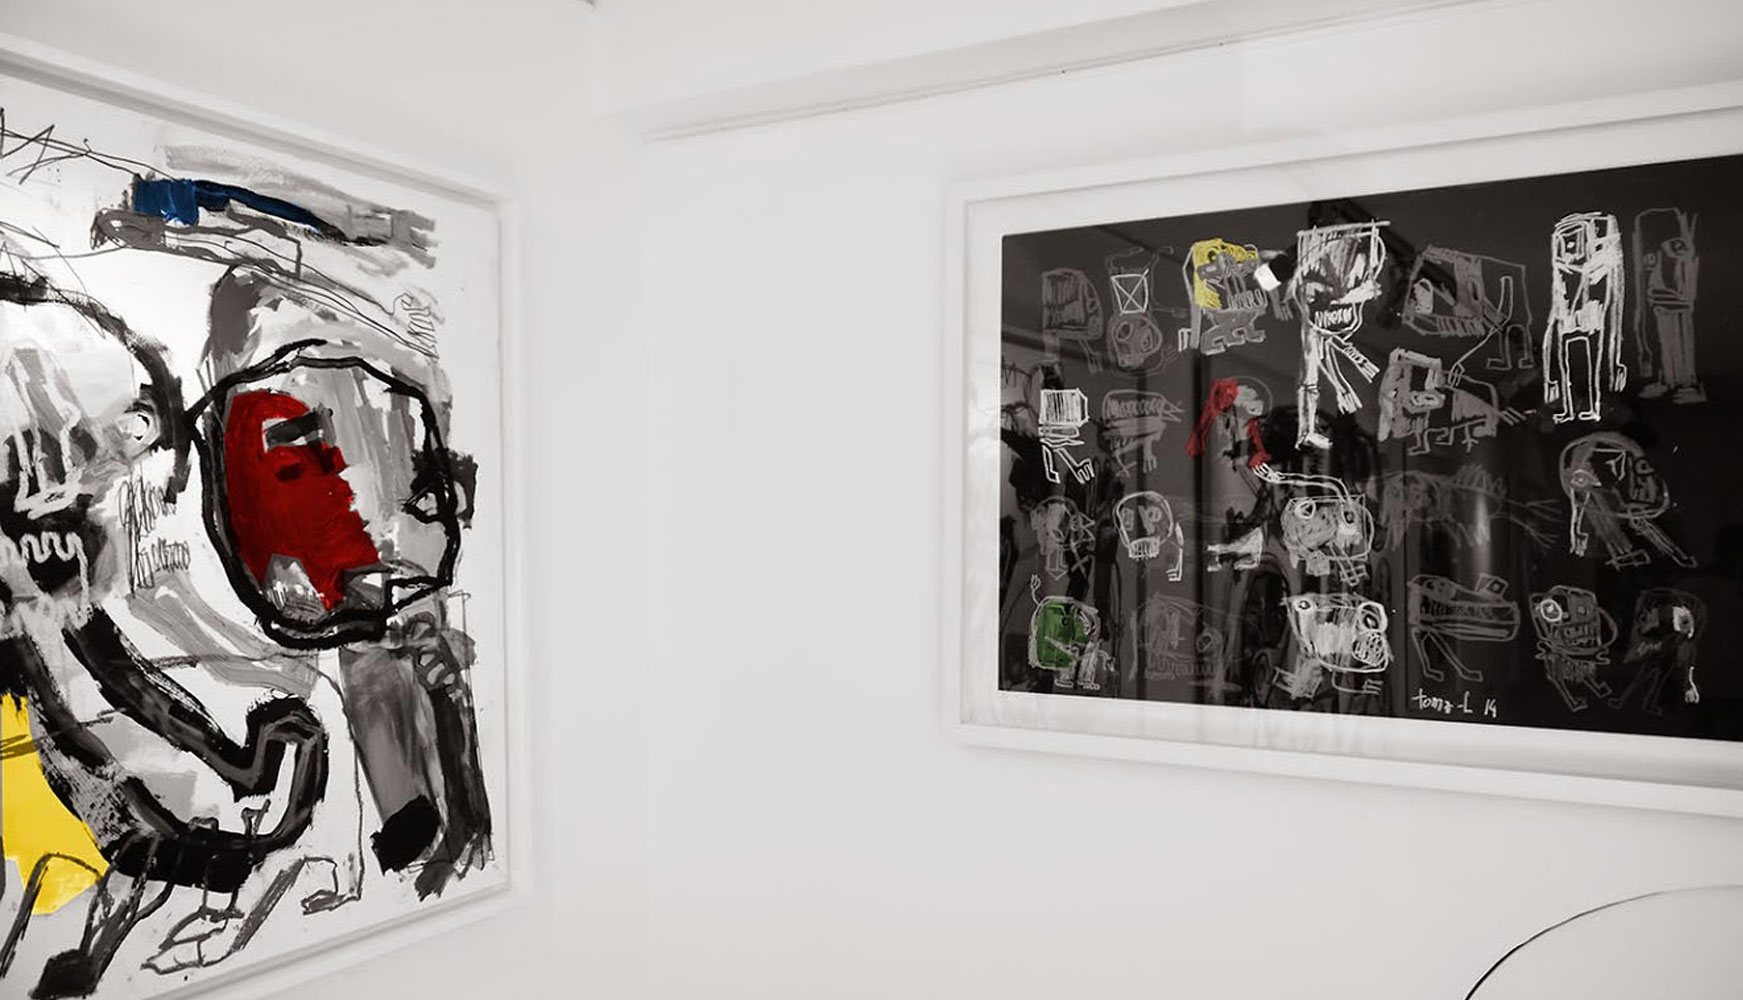 Exposition Galerie W - Paris 18 Mise en avant des dernières créations lors d'un accrochage, sur tout un étage de la Galerie W. À partir du 15 juin.
Toma-l 2014
 
© Photographie : www.galeriew.com